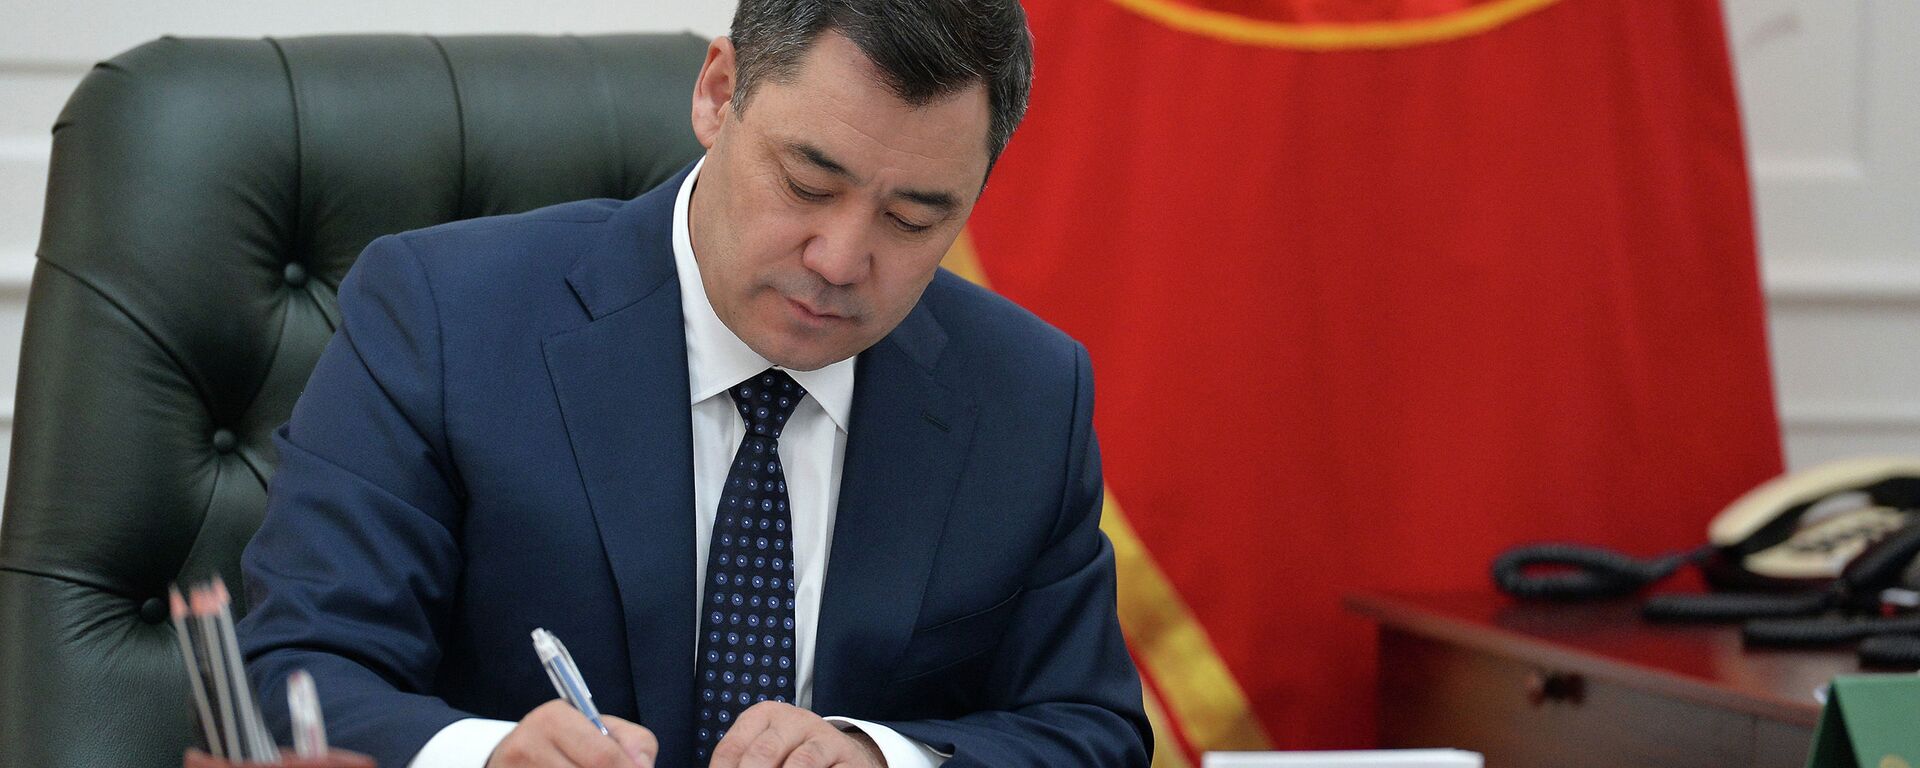 Президент Кыргызстана Садыр Жапаров подписывает документ у себя в кабинете - Sputnik Кыргызстан, 1920, 29.01.2021